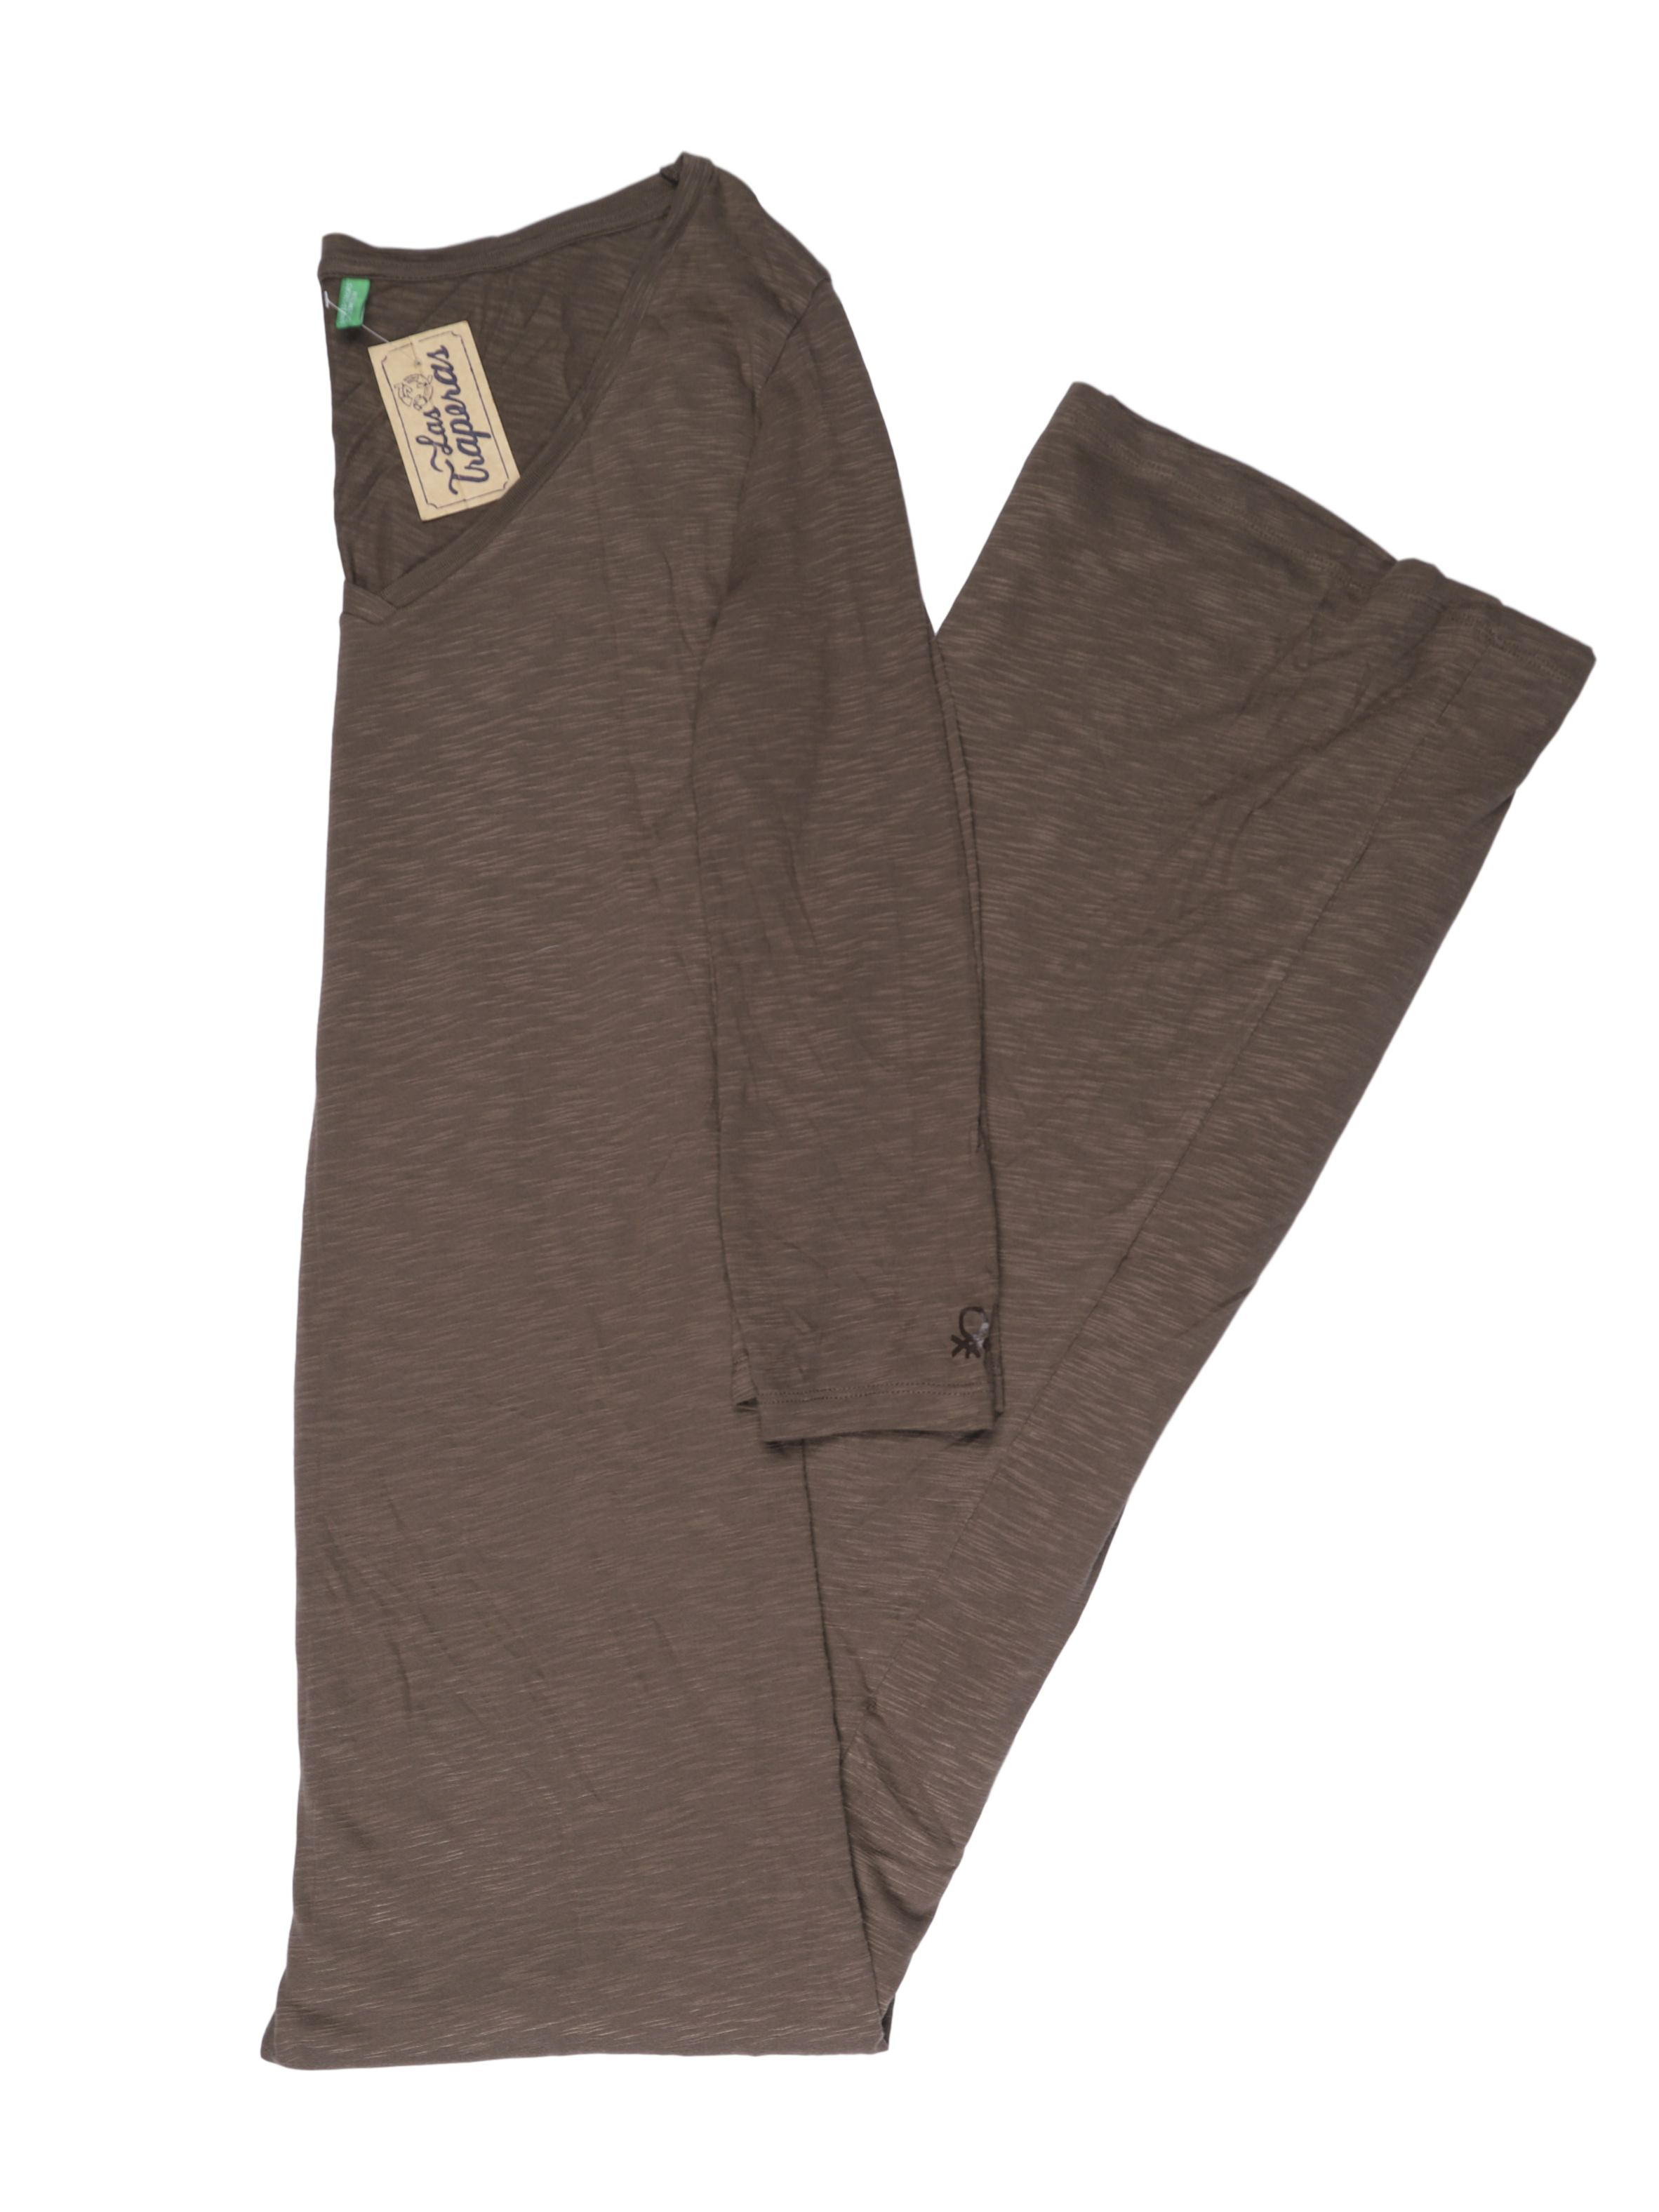 Vestido largo Benetton tipo algodón, escote en V y mangas 3/4. Precio original S/ 240